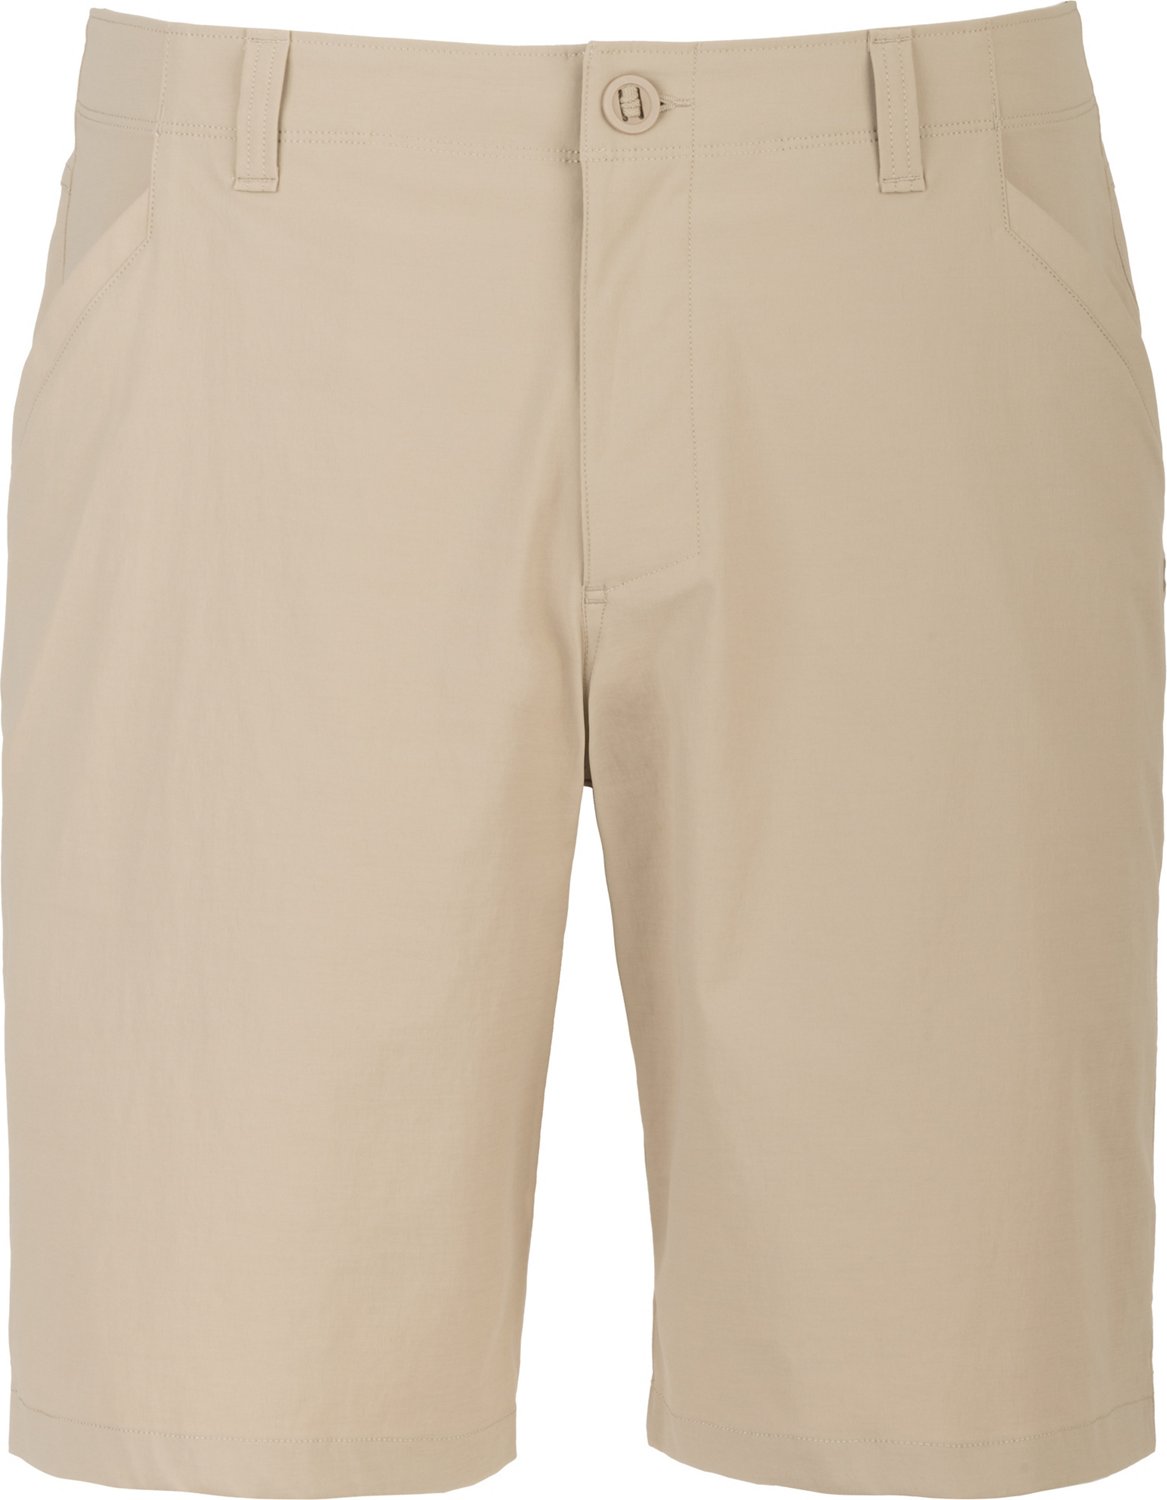 Fishing Pants & Shorts | Outdoor Pants & Fishing Shorts For Men, Women